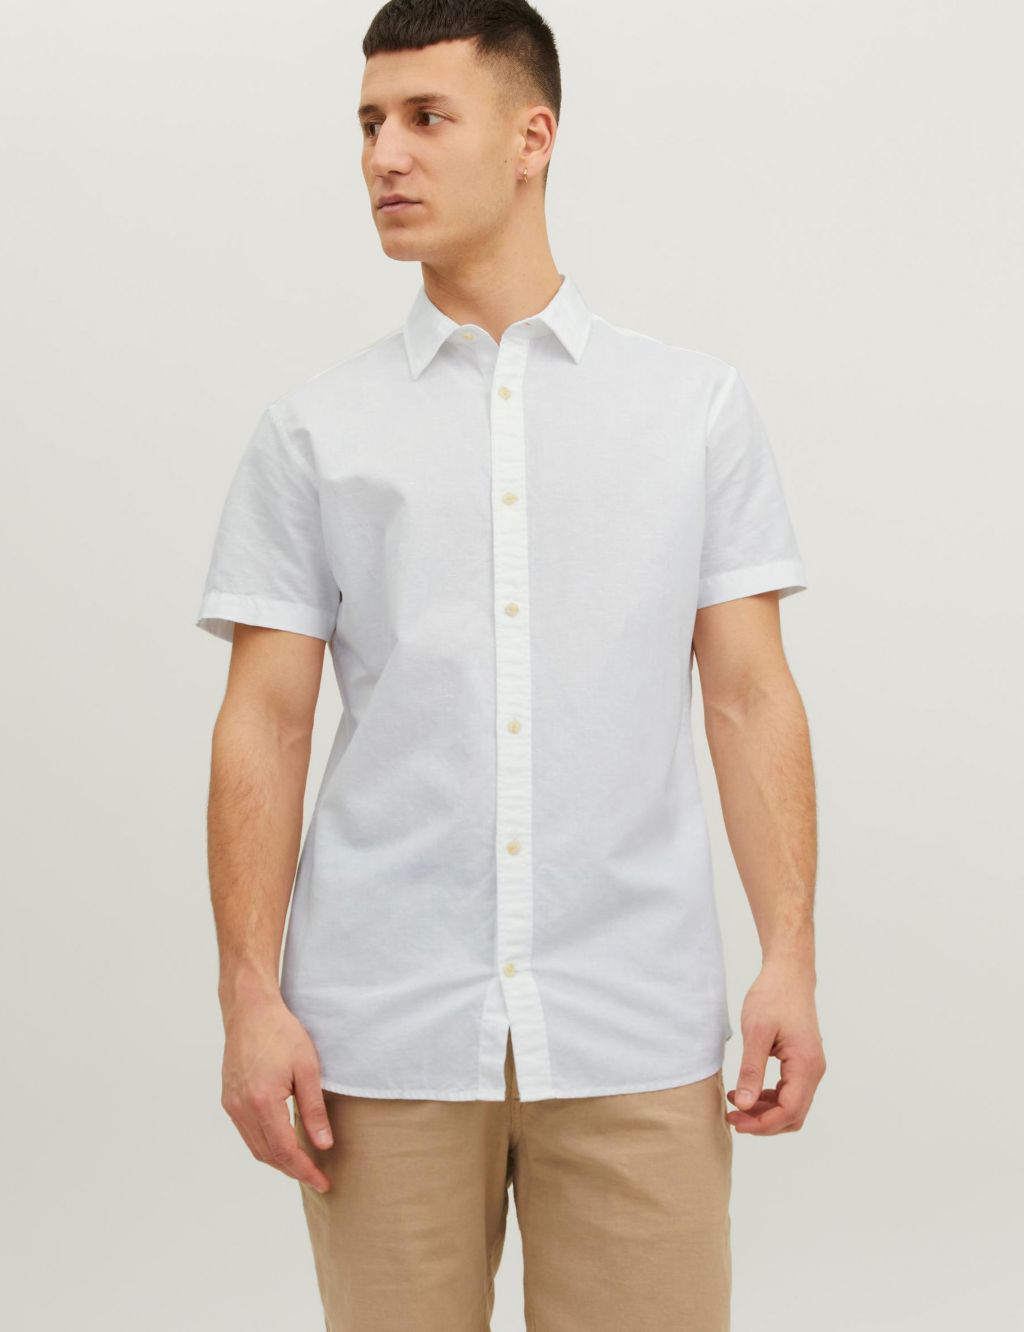 Slim Fit Cotton Rich Oxford Shirt image 1